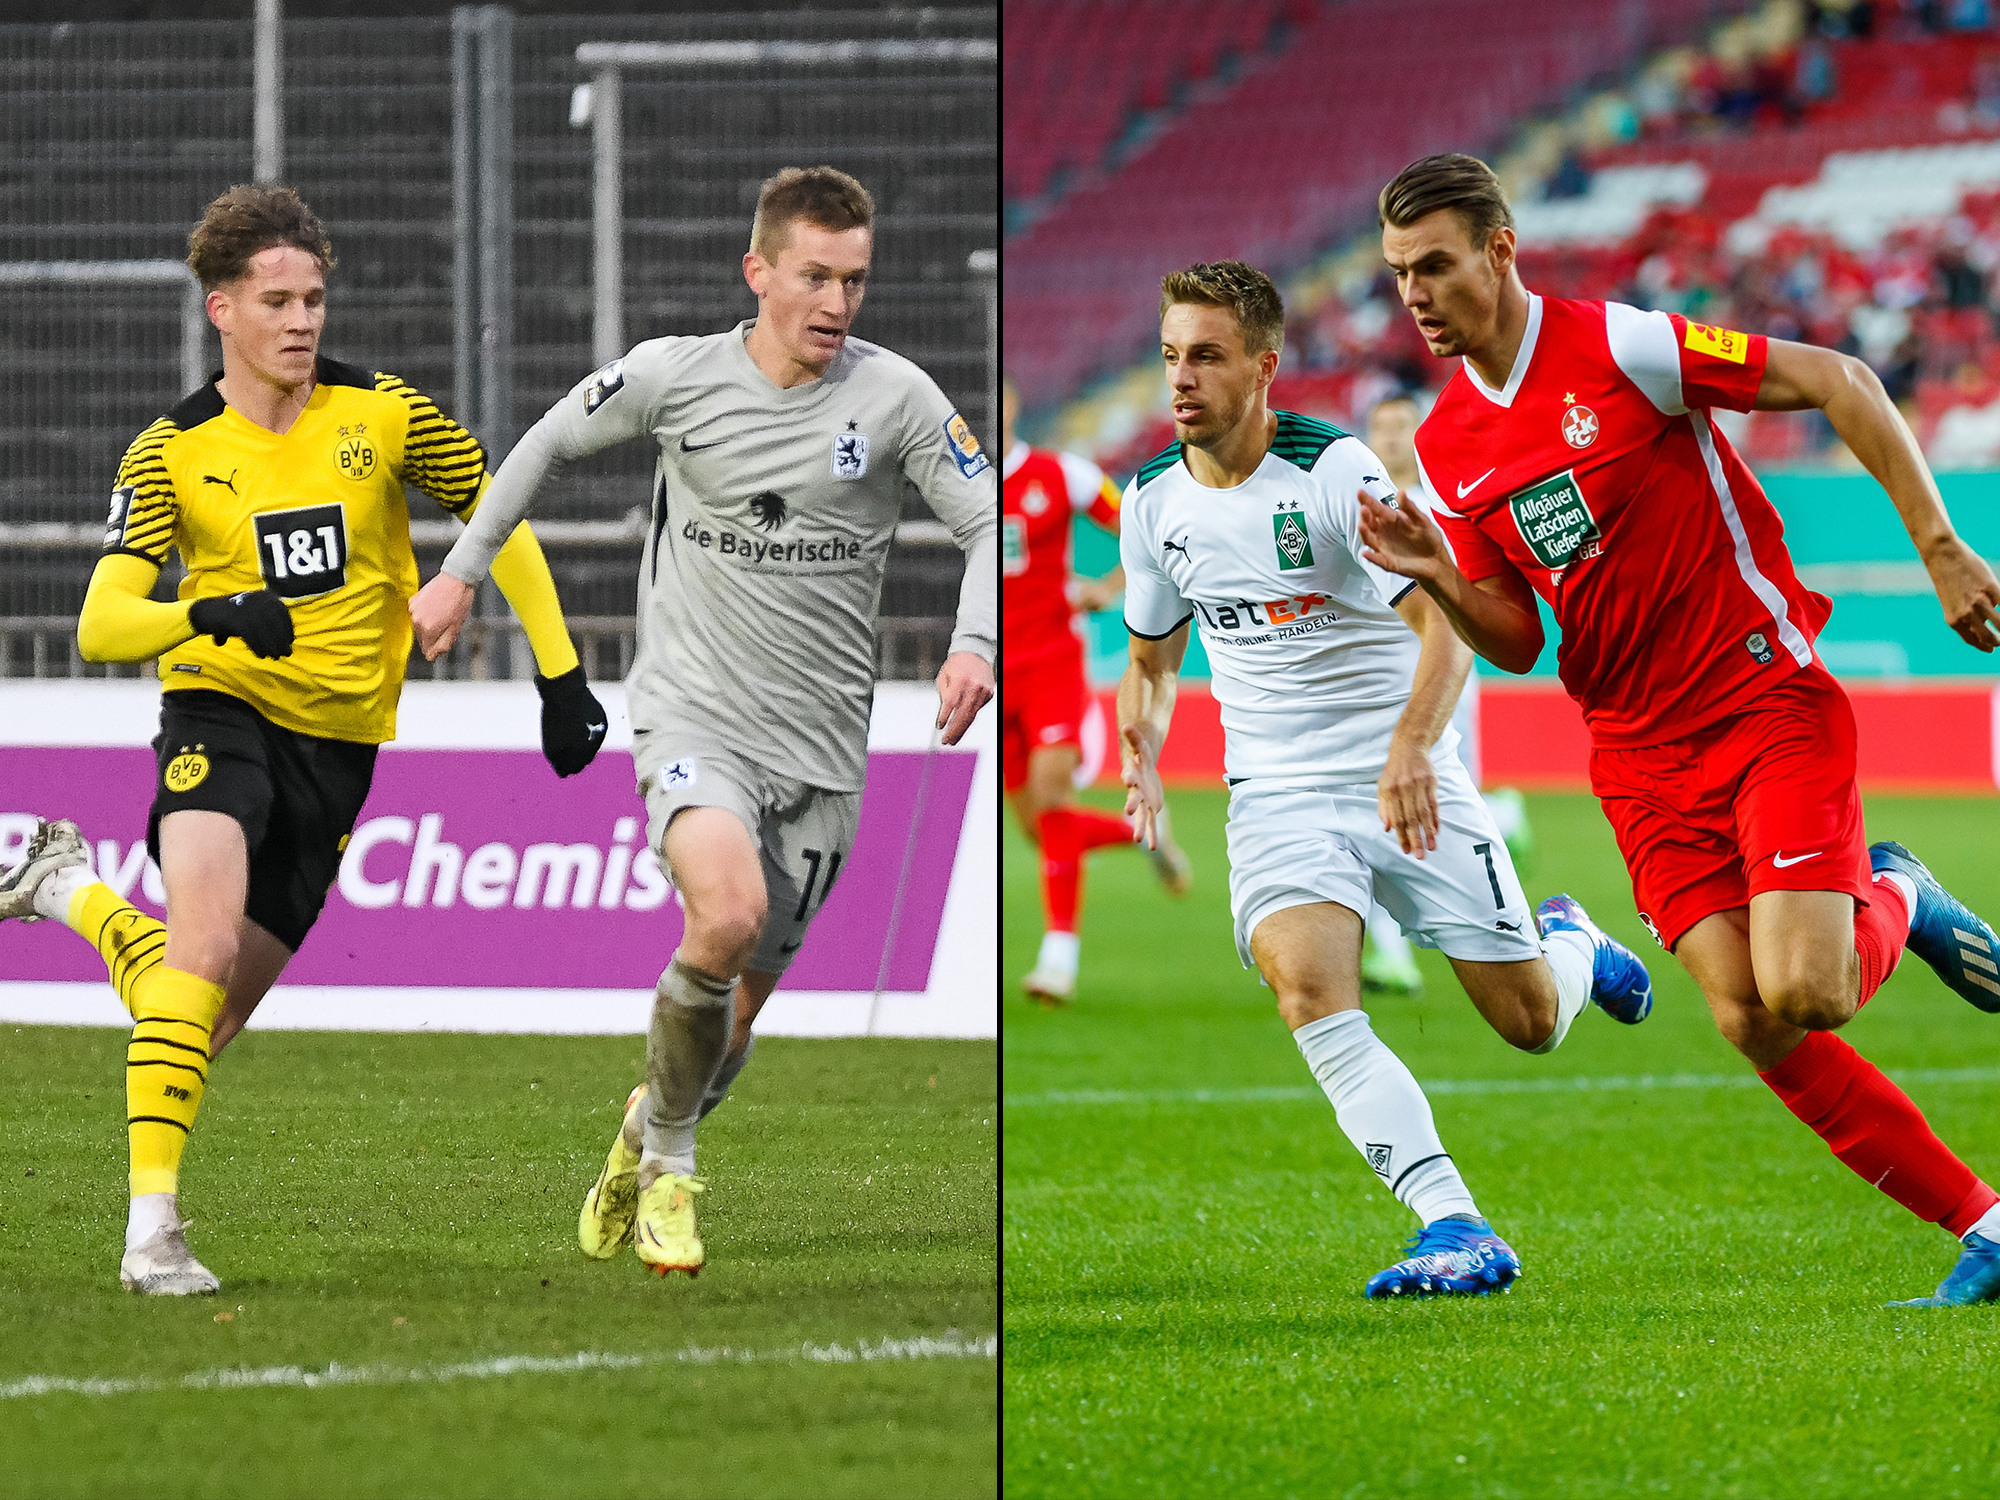 Christian Viet im Trikot von Borussia Dortmund II und Marvin Senger im Trikot des 1. FC Kaiserslautern.